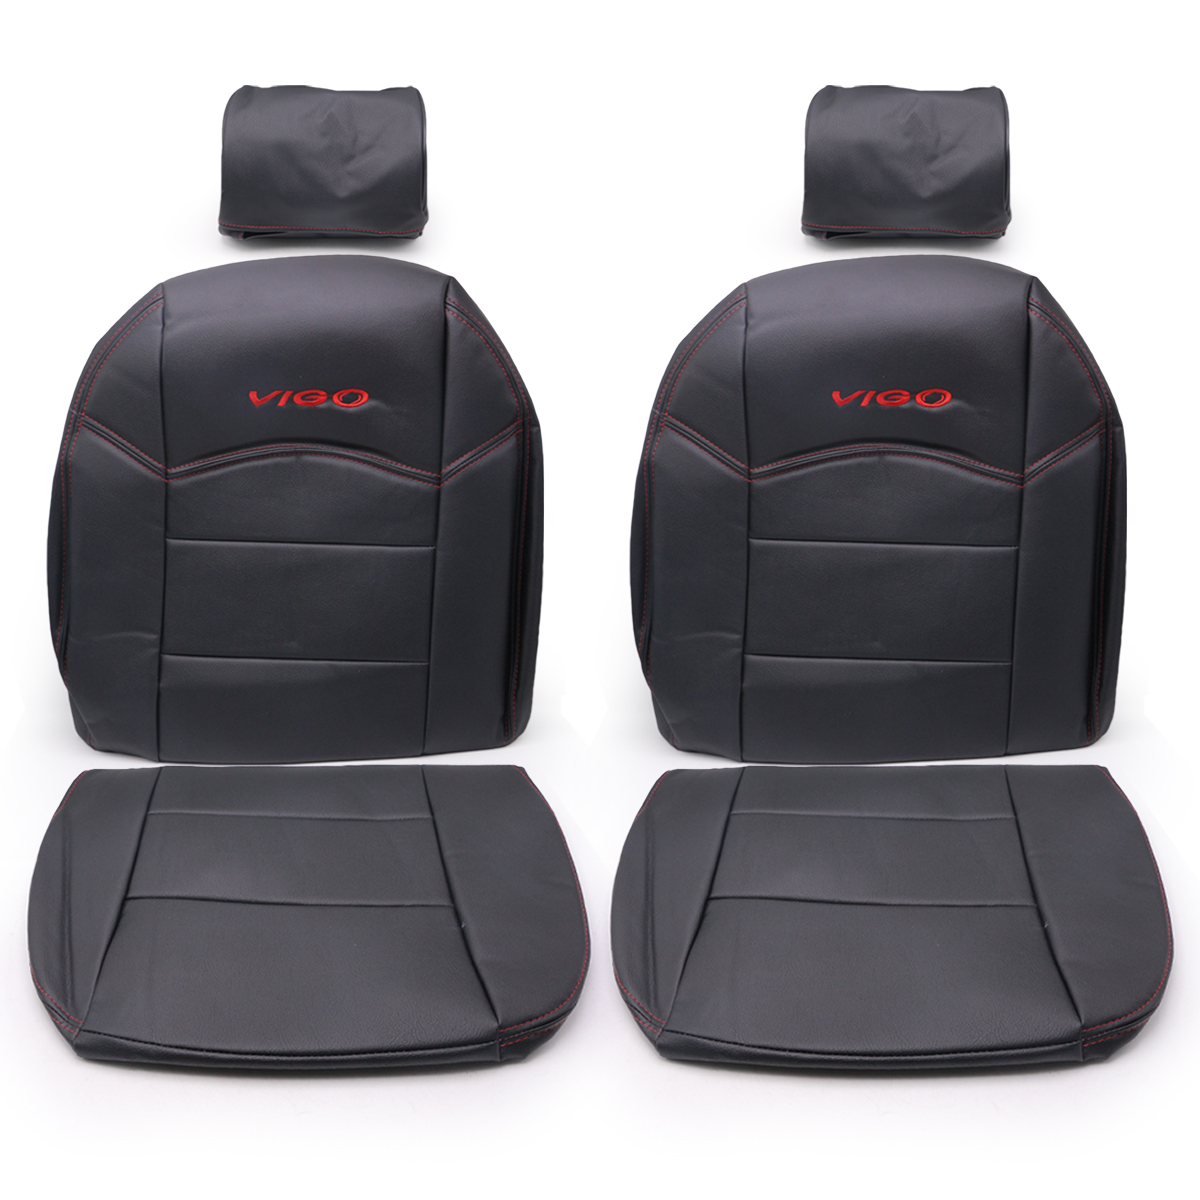 ชุดหุ้มเบาะ หนัง PVC สีดำ ด้ายแดง เบาะคู่หน้า ซ้าย+ขวา โลโก้ Vigo แดง Toyota ปี 2005 - 2014 มีเก็บเงินปลายทาง PVC Leather Front Seat Cover